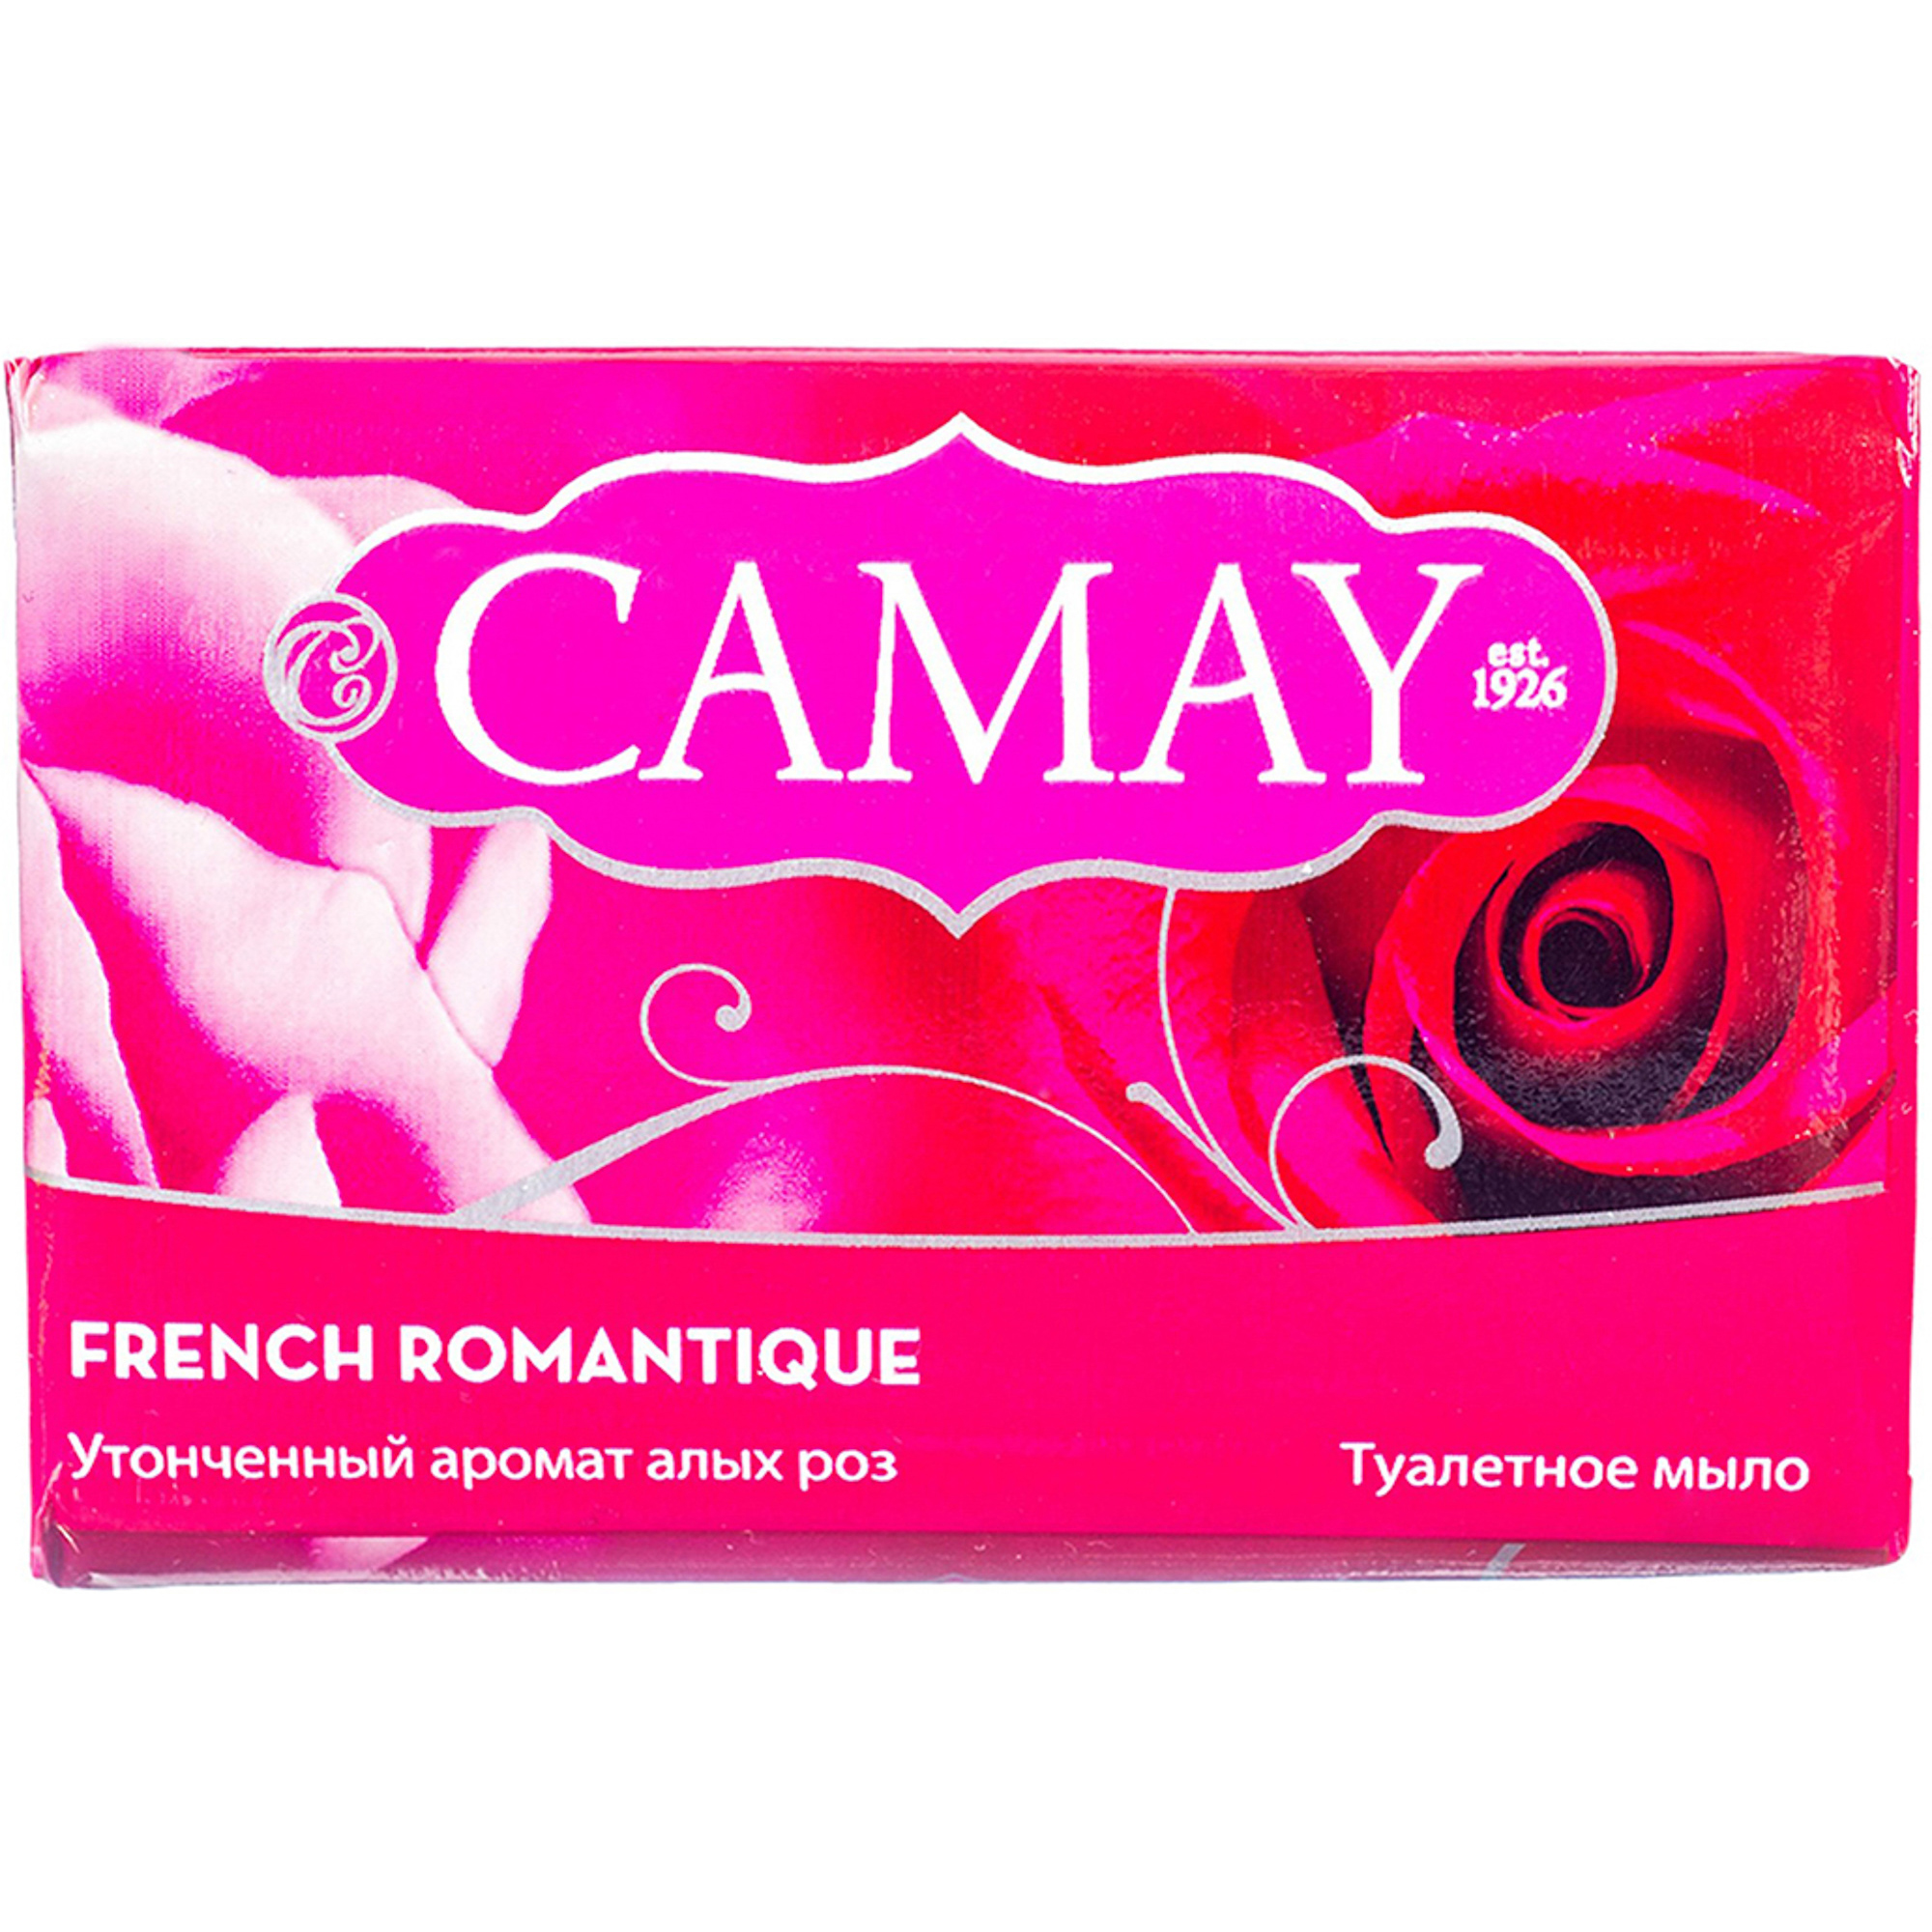 Мыло Camay French Romantique 85 г, размер 8,5x5,4x2,7 см 67048276 - фото 1